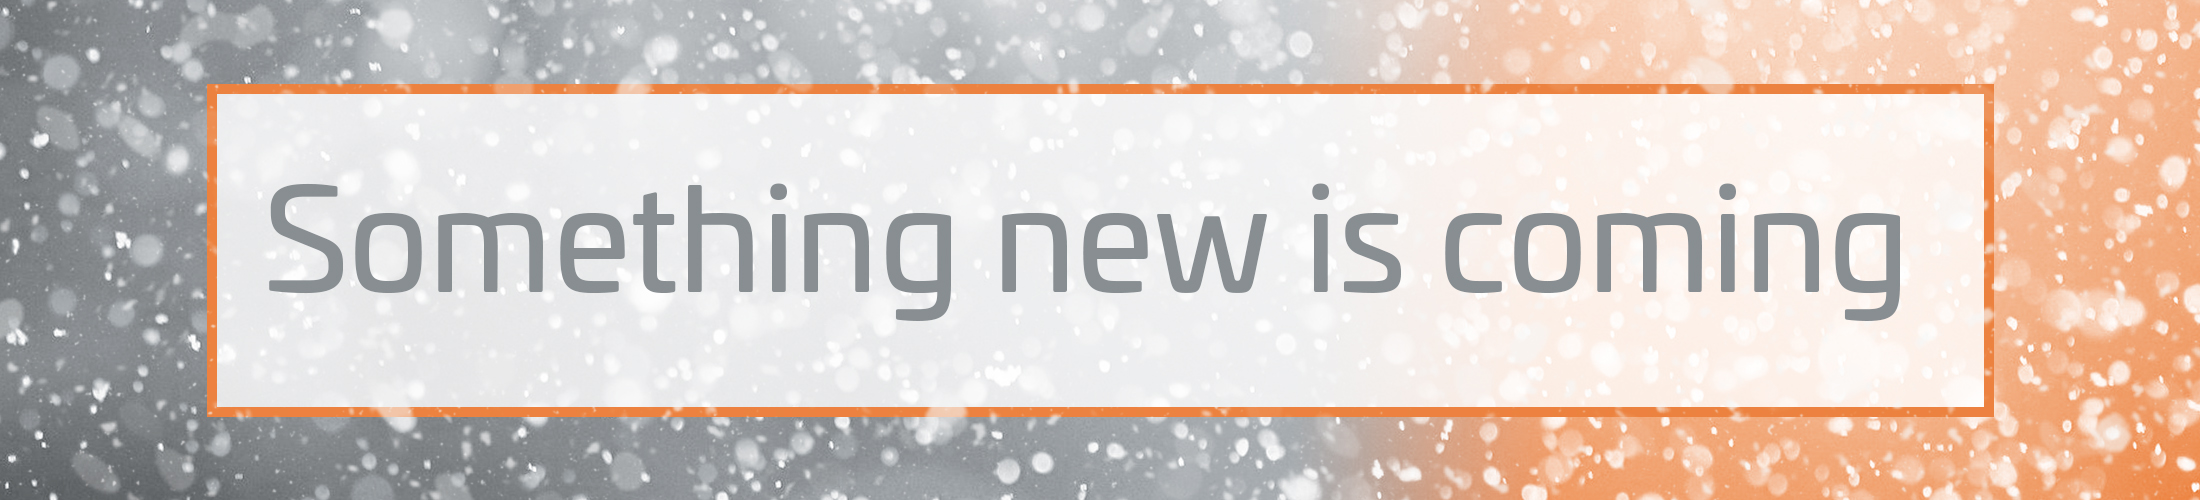 Schneegestöber auf grau orangem Hintergrund. Im Vordergrund Textrahmen in dem steht: "Something new is coming!"